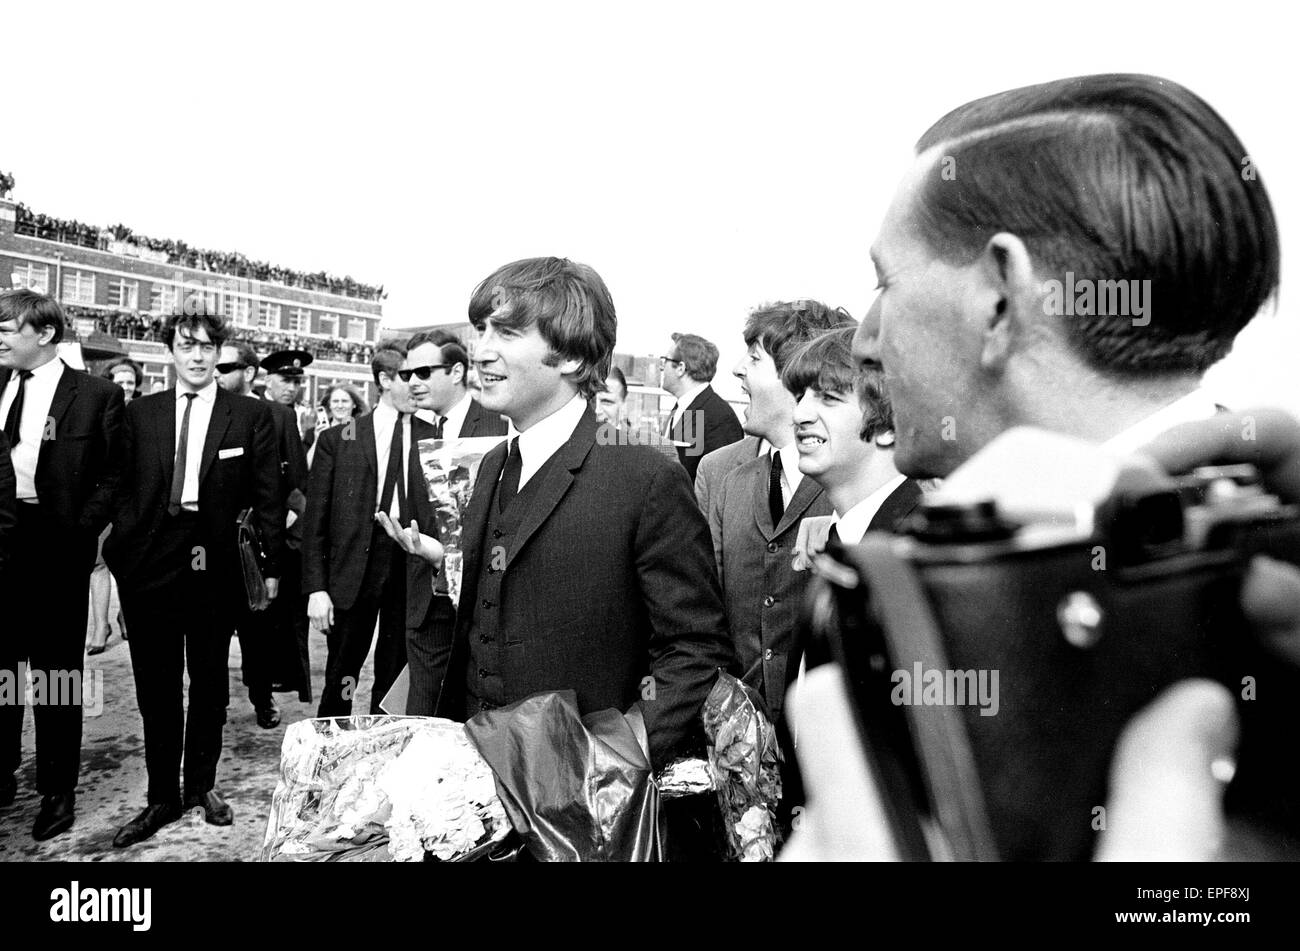 Die Beatles in Liverpool für die Premiere von a Hard Day Night. Ringo Starr, George Harrison und Paul McCartney im Bild hier im Cockpit des Flugzeugs auf ihrem Flug nach Liverpool. 10. Juli 1964. Stockfoto